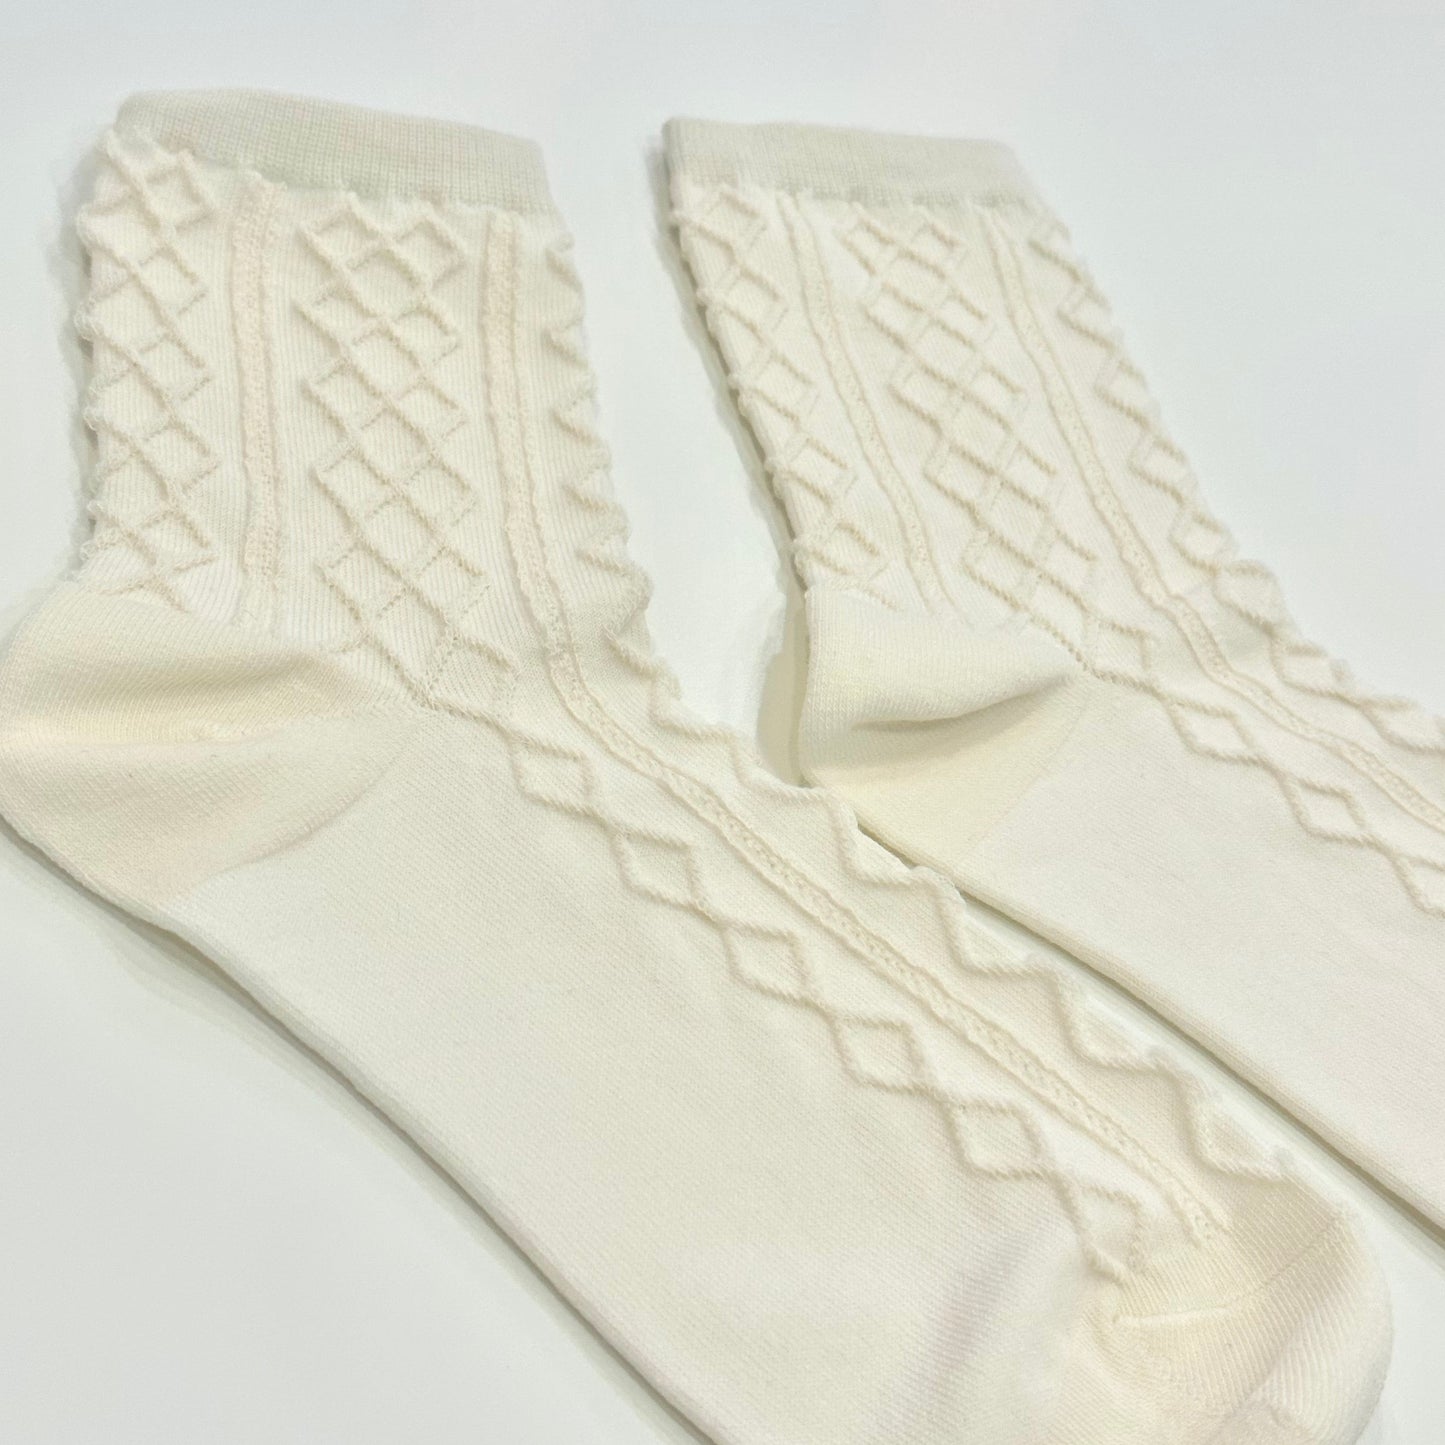 Cream Detailed Socks